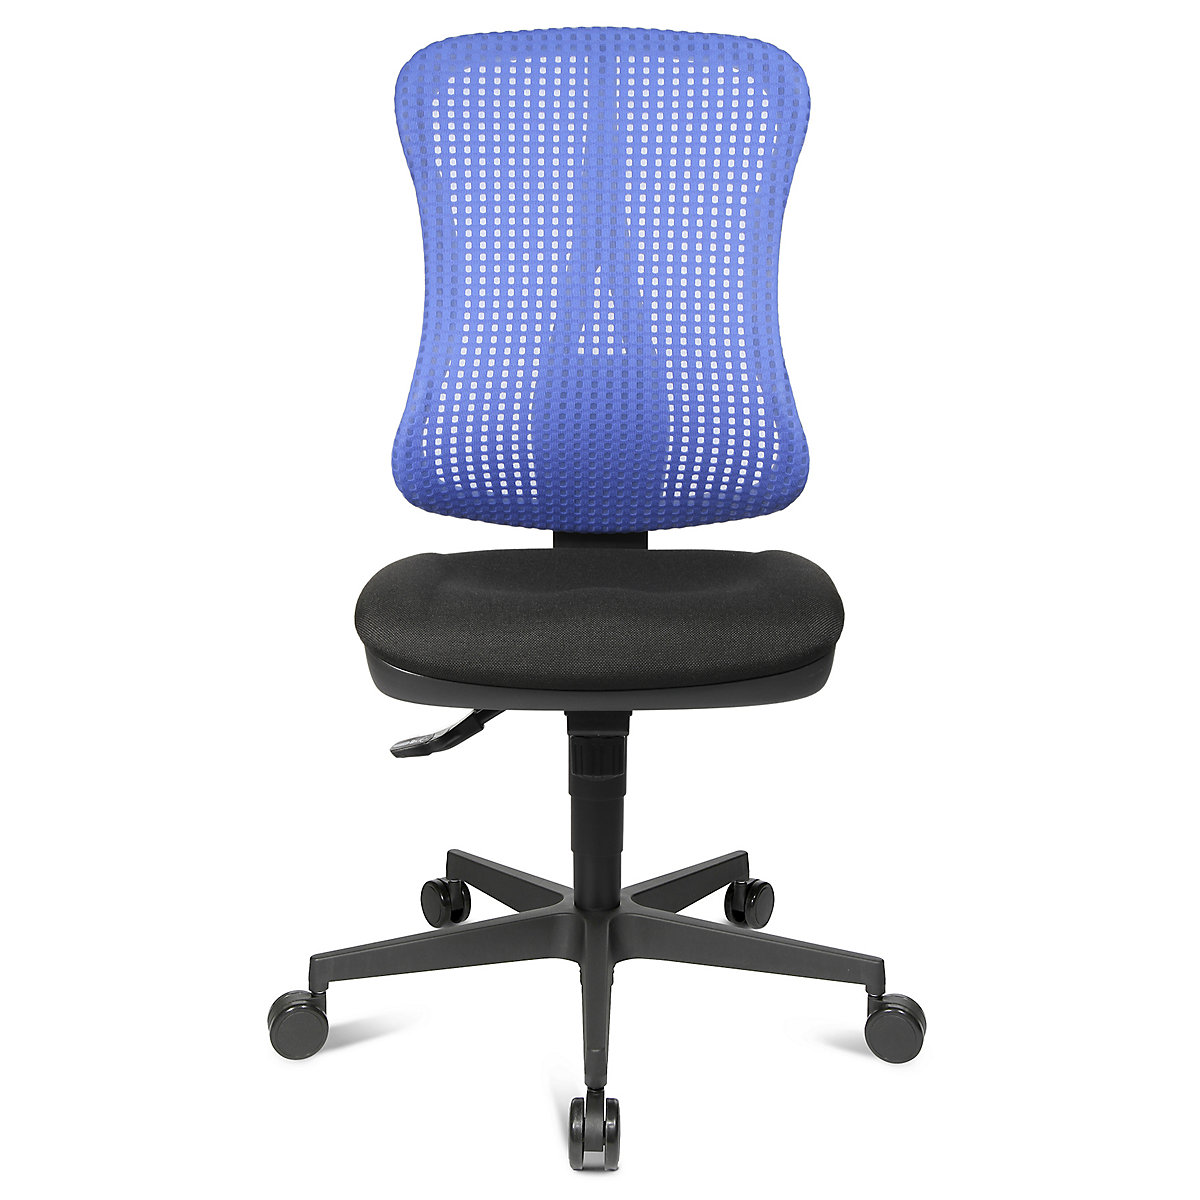 Silla giratoria ergonómica con asiento moldeado – Topstar, sin brazos, asiento negro, retícula del respaldo azul-8